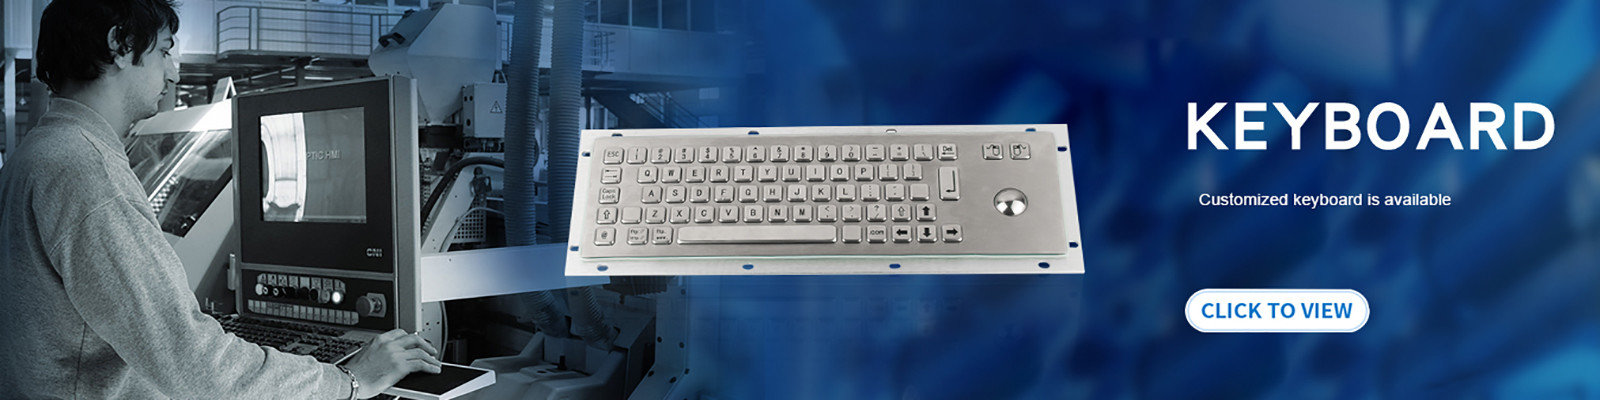 keyboard mechanical stainless steel keyboard